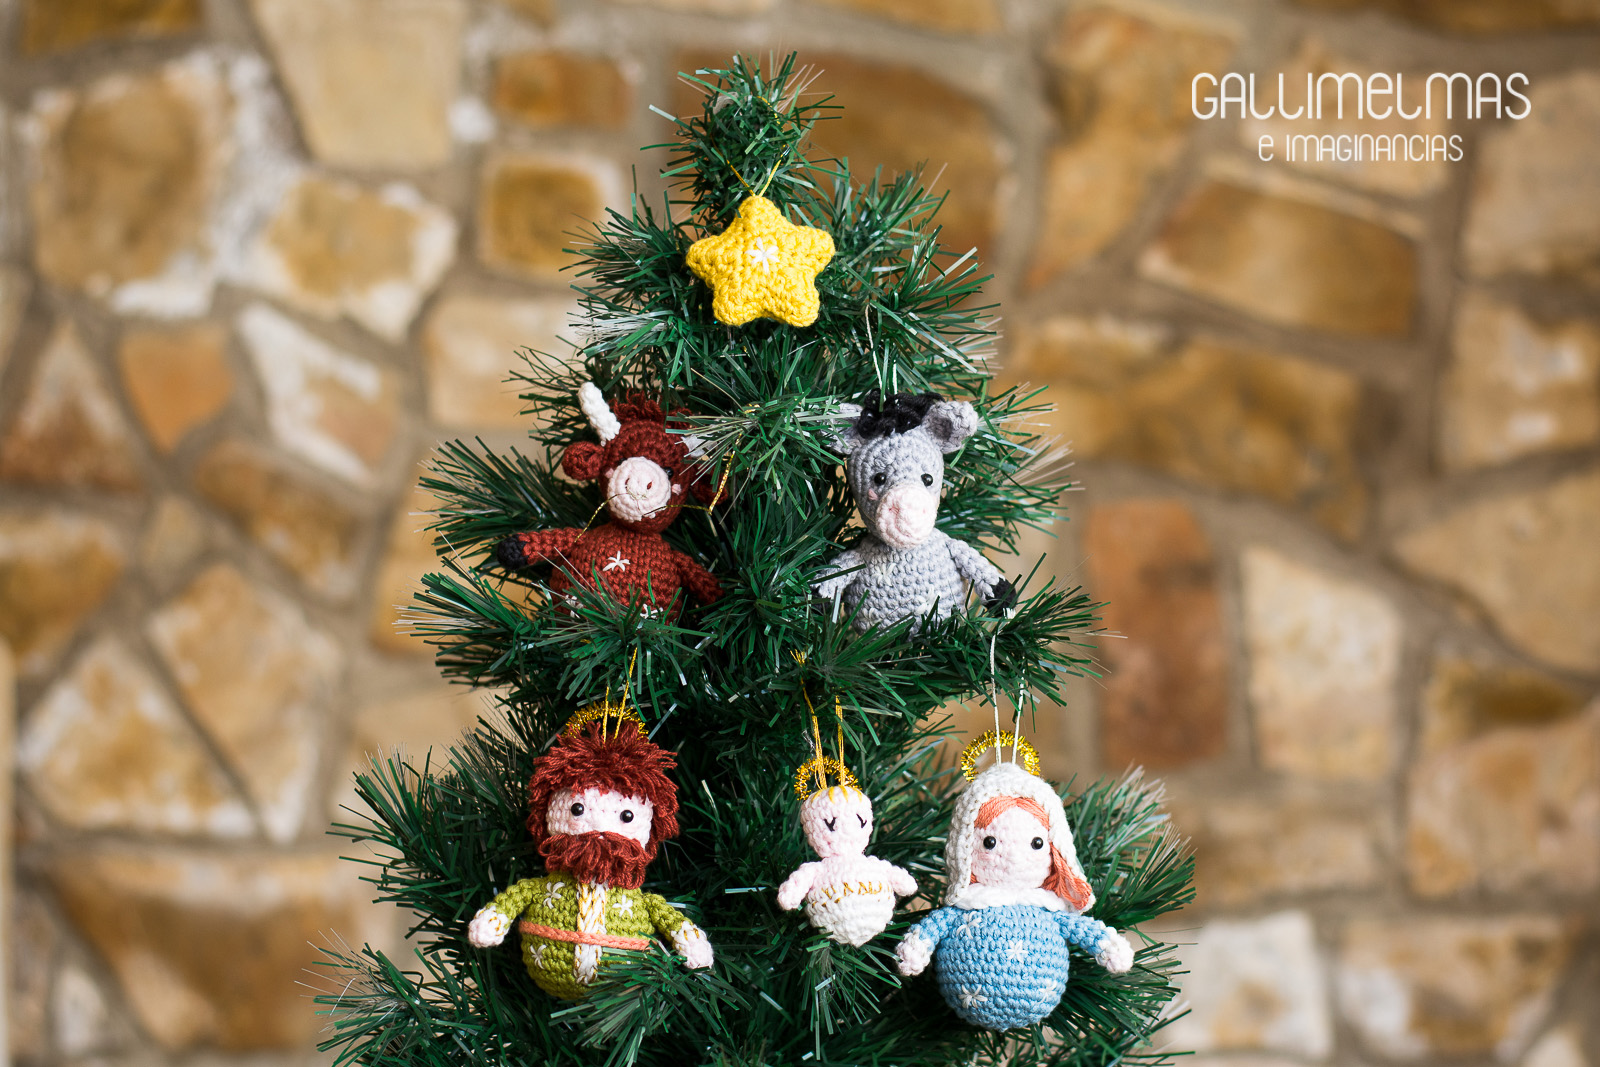 Suburbio Acerca de la configuración deslealtad Gallimelmas e Imaginancias: ¡Esta Navidad pon el belén en tu árbol!